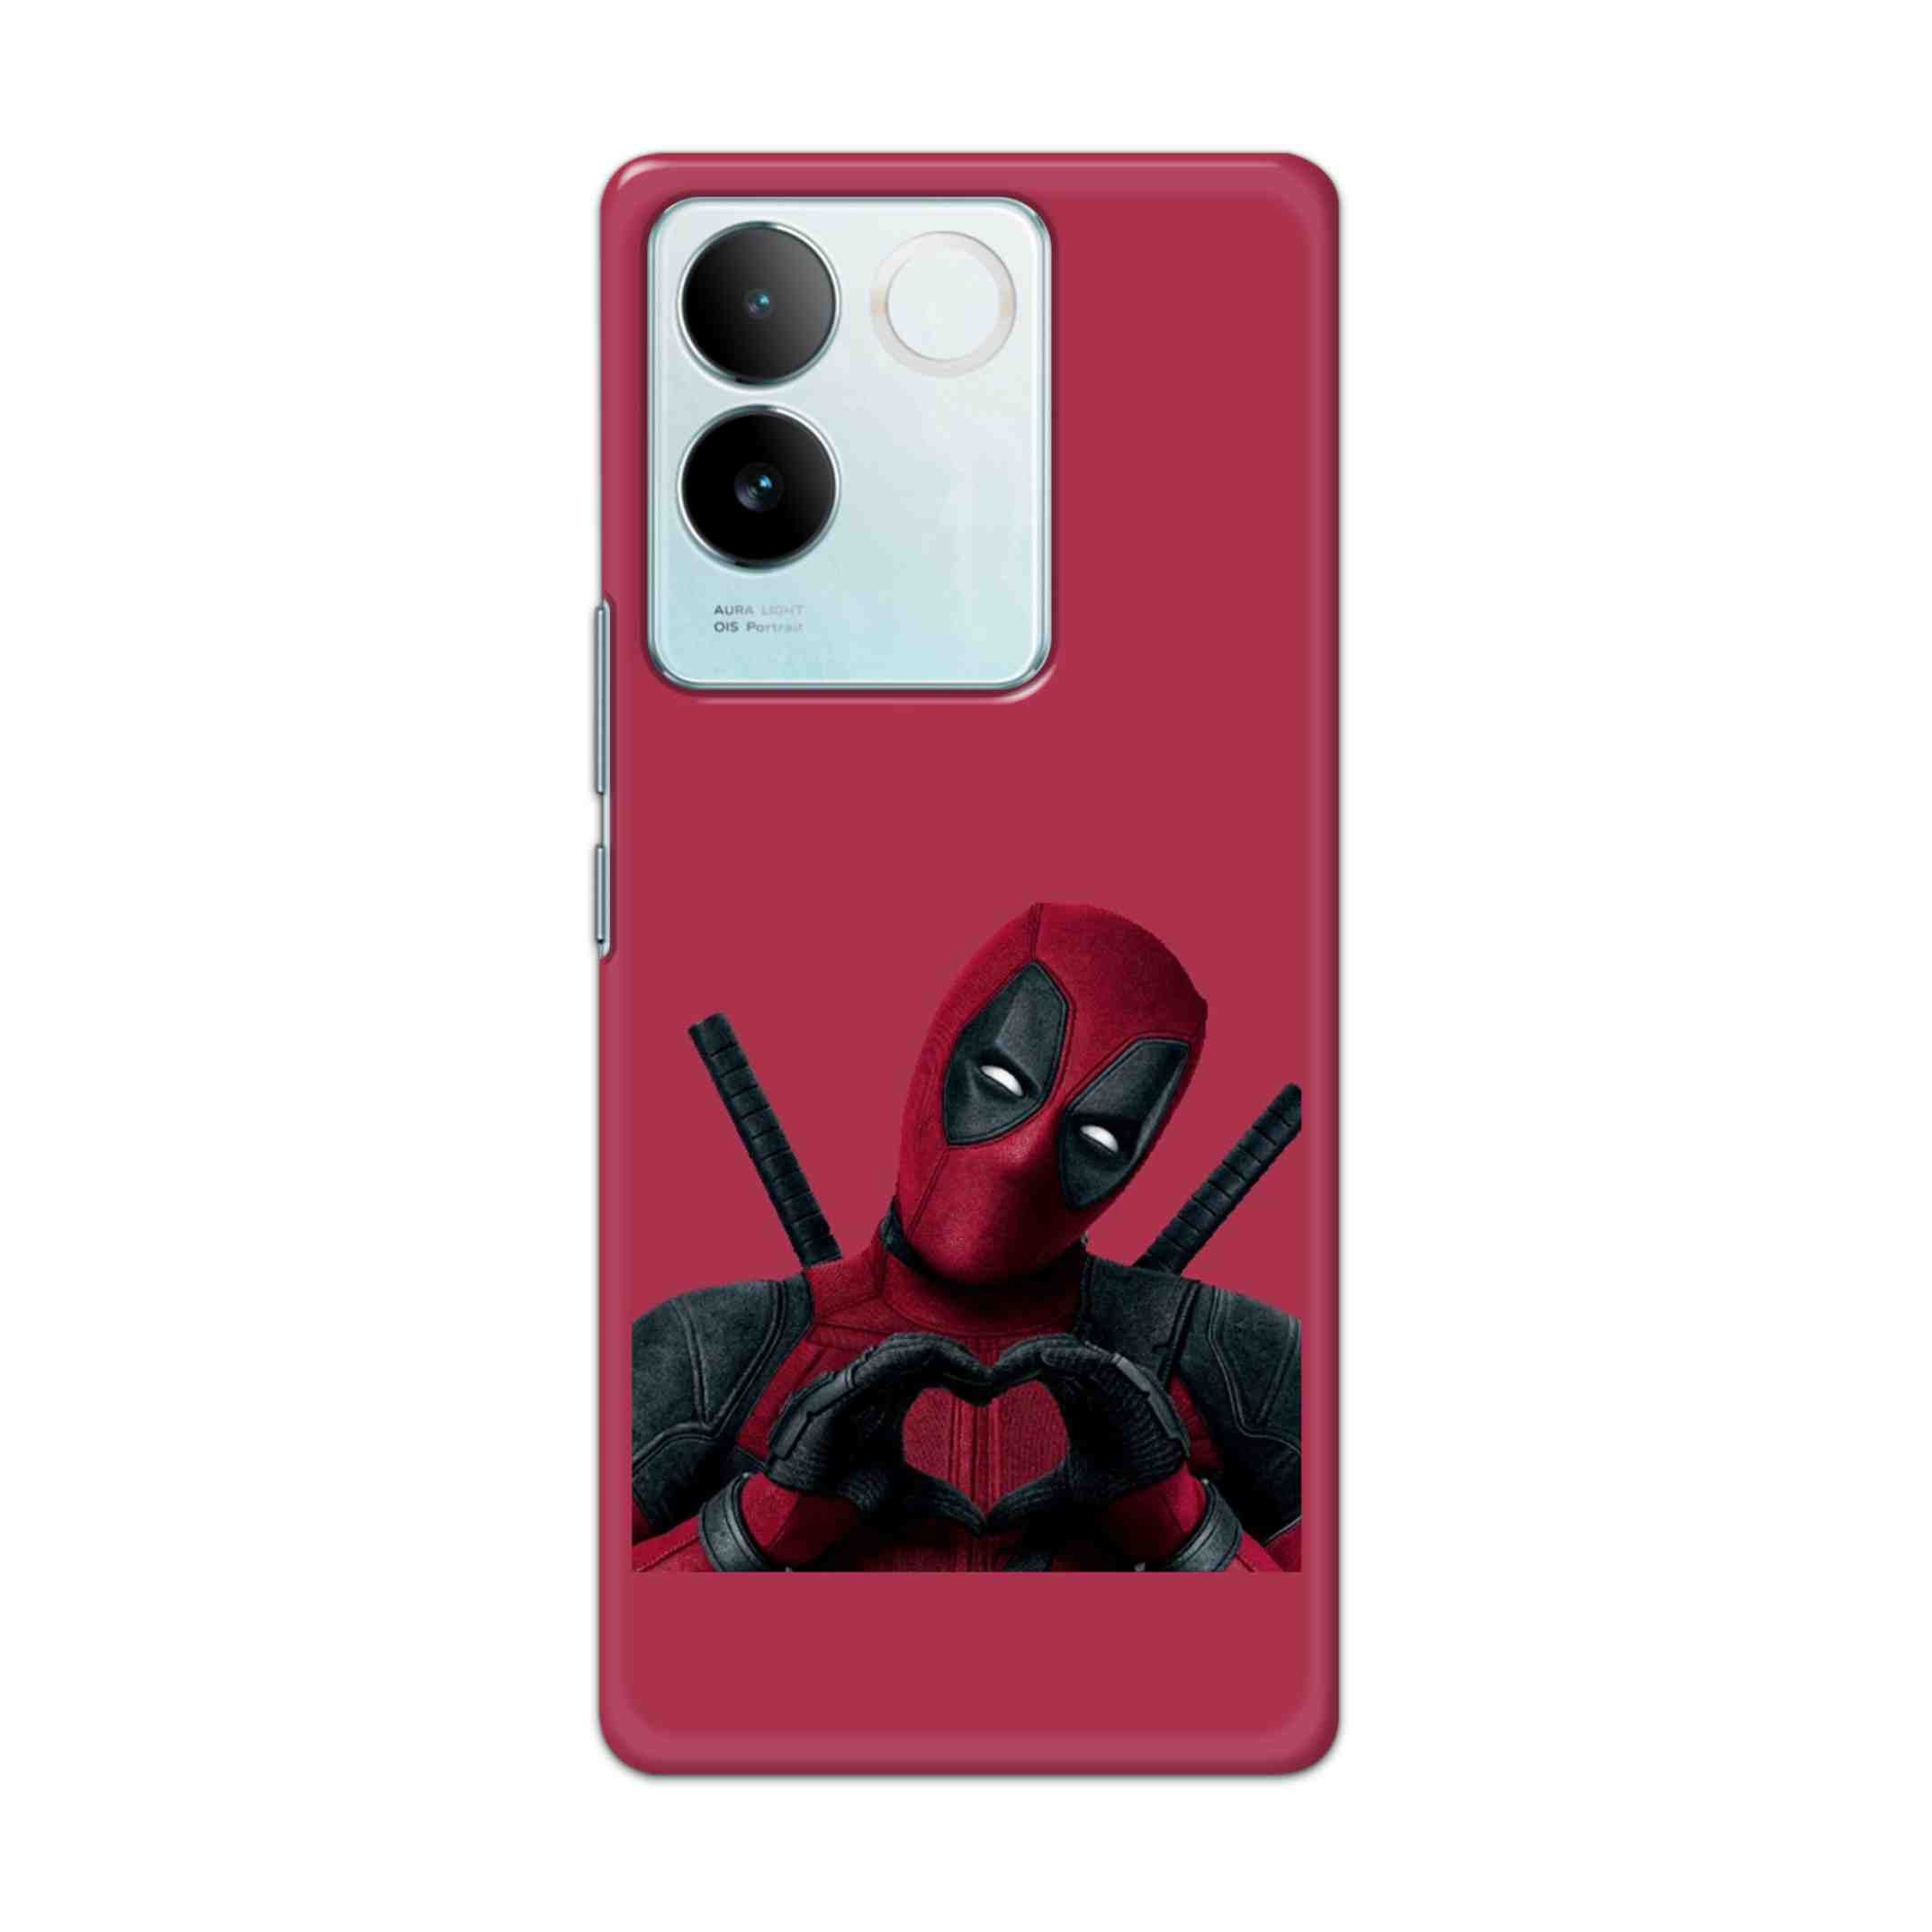 Buy Deadpool Heart Hard Back Mobile Phone Case/Cover For iQOO Z7 Pro (5G) Online